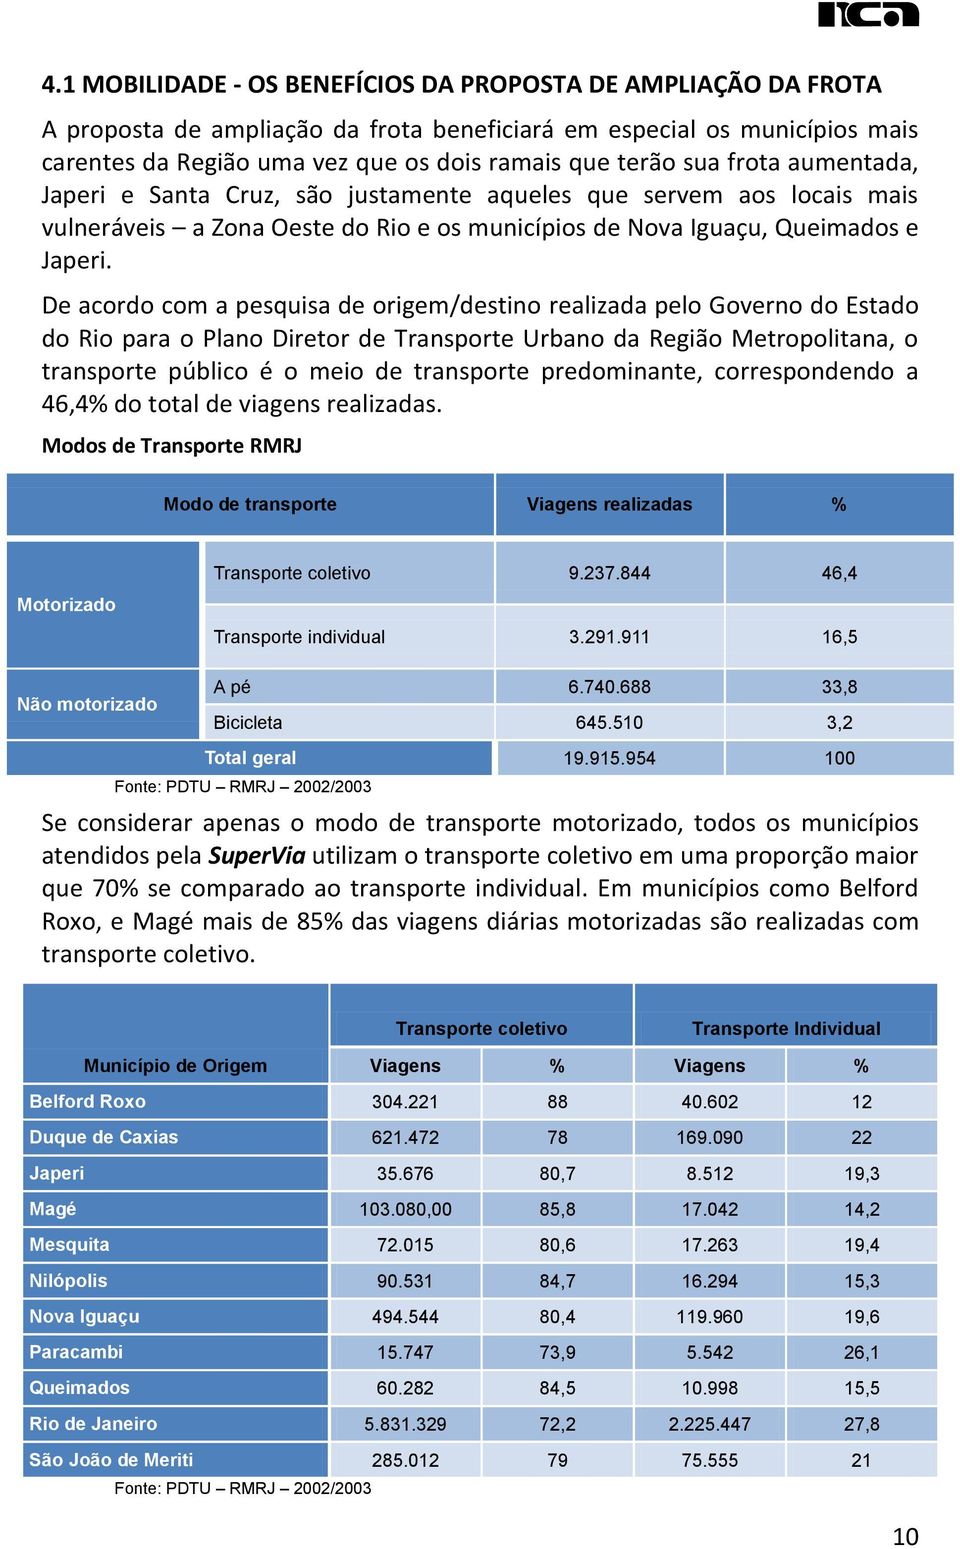 De acordo com a pesquisa de origem/destino realizada pelo Governo do Estado do Rio para o Plano Diretor de Transporte Urbano da Região Metropolitana, o transporte público é o meio de transporte